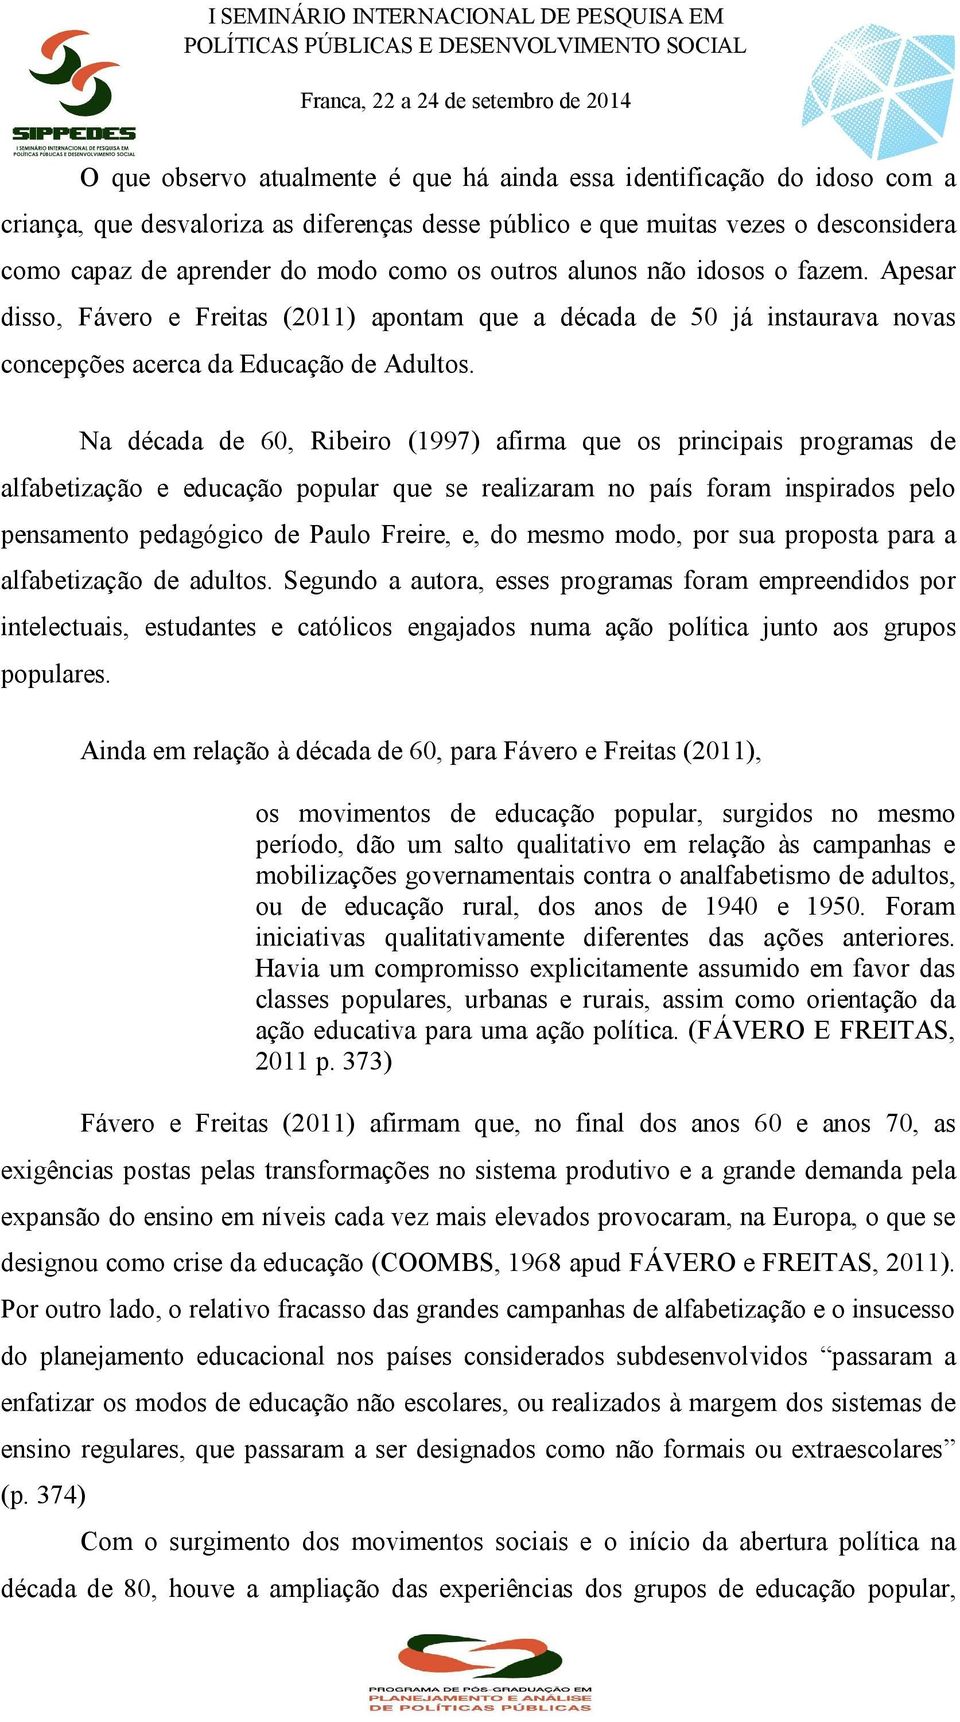 Na década de 60, Ribeiro (1997) afirma que os principais programas de alfabetização e educação popular que se realizaram no país foram inspirados pelo pensamento pedagógico de Paulo Freire, e, do